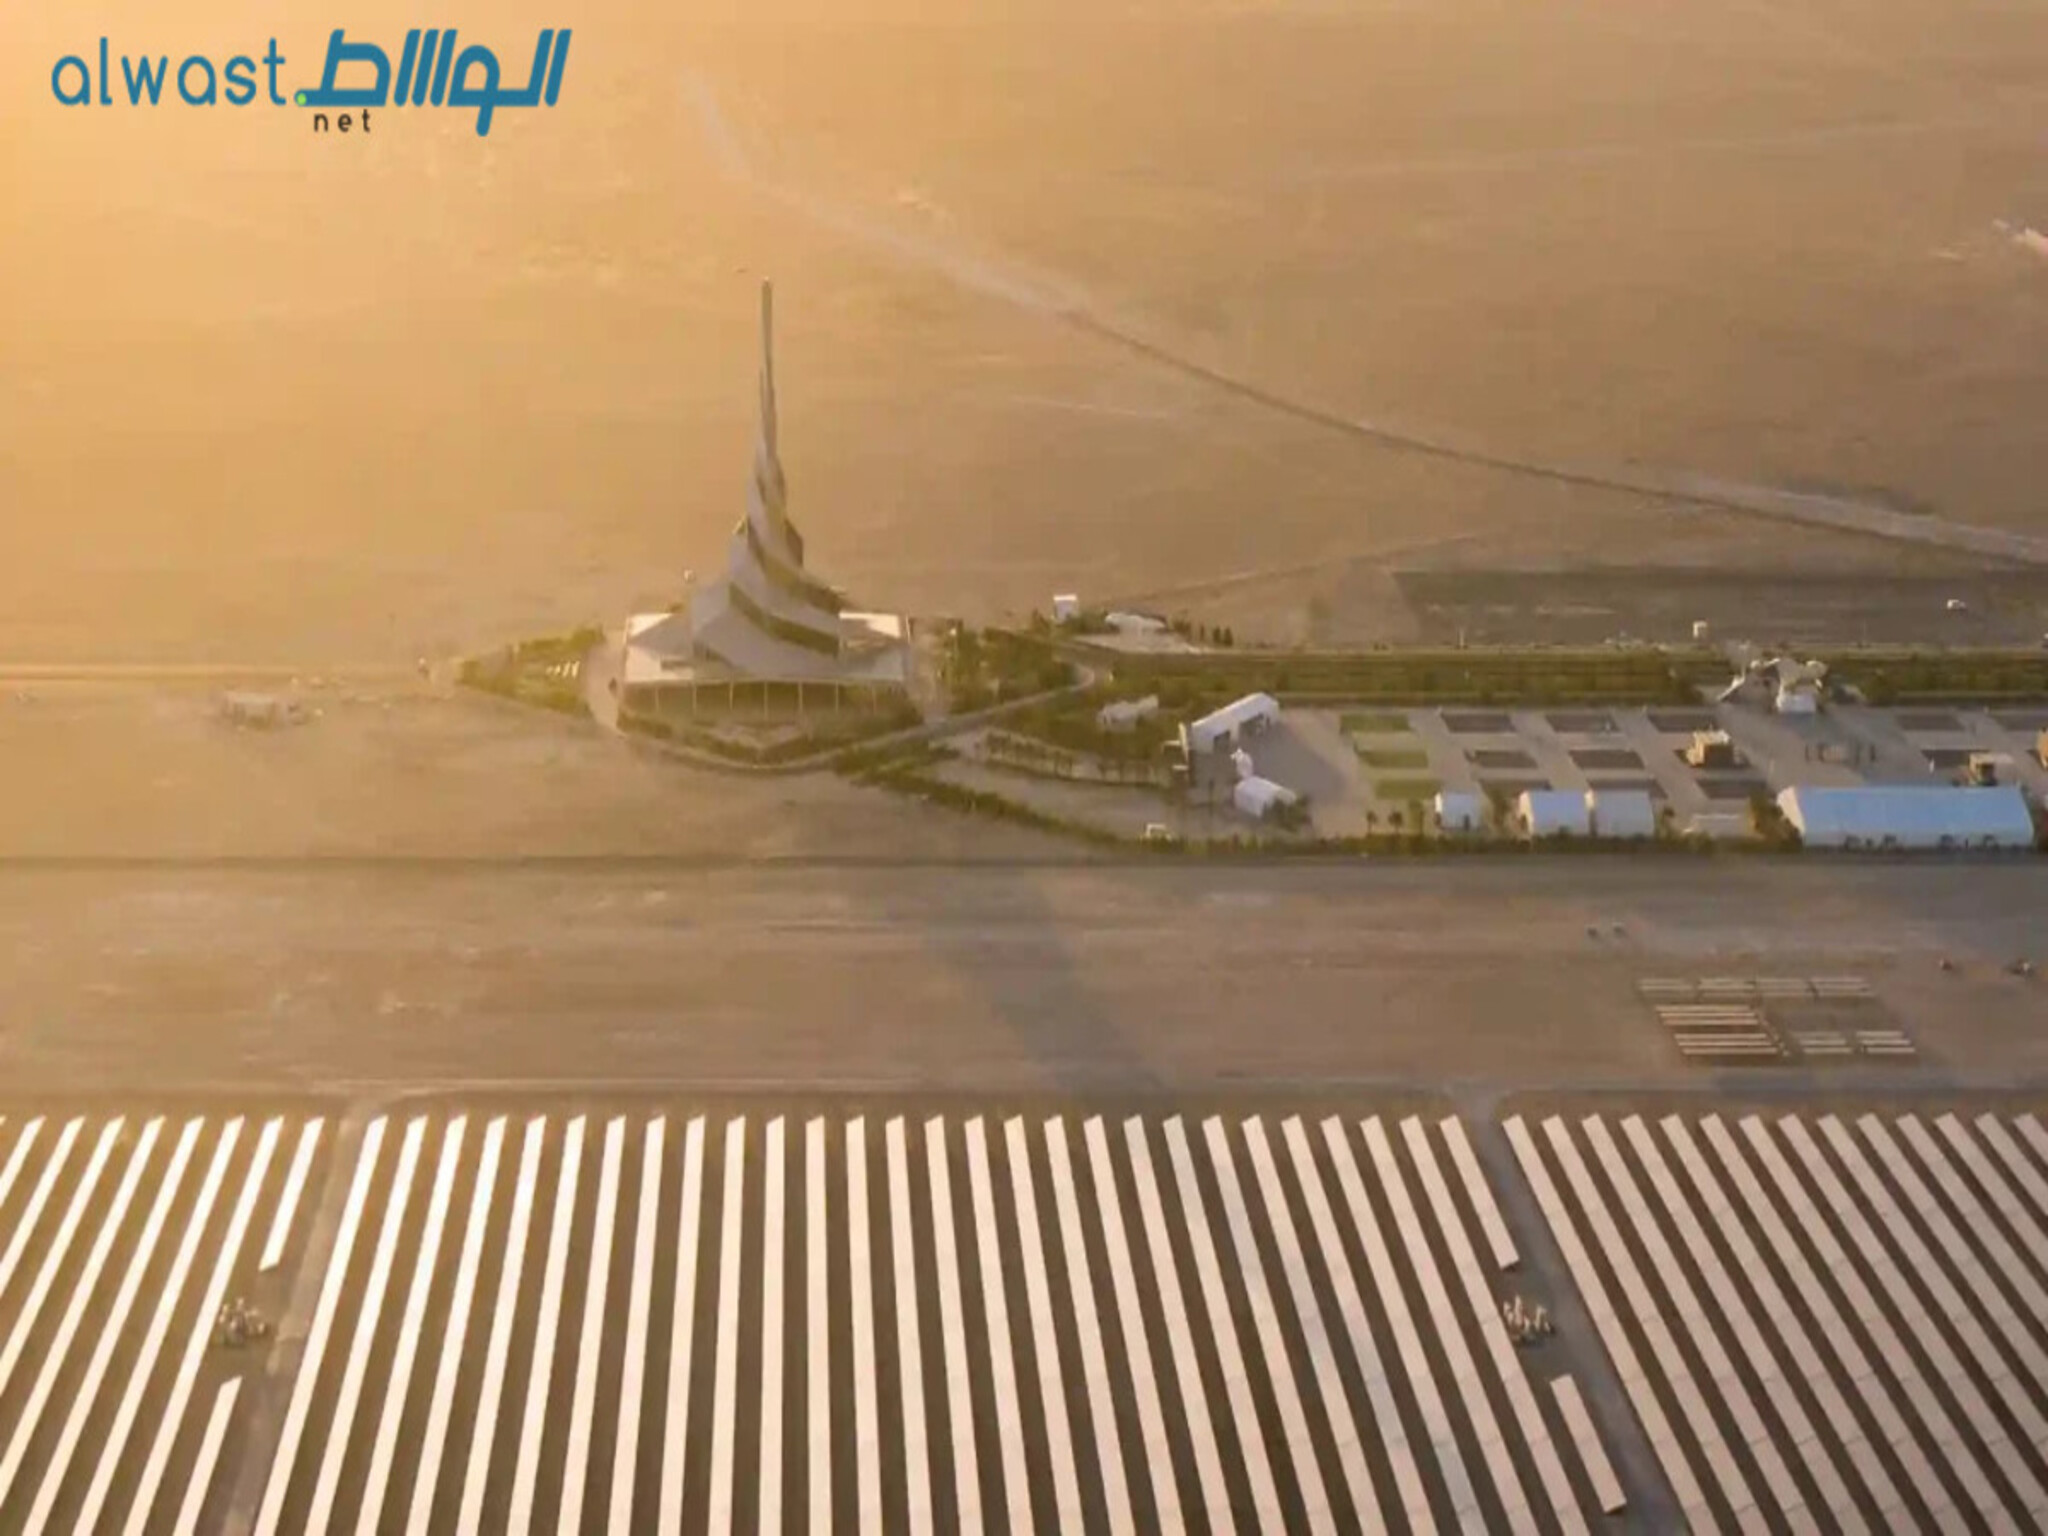 Dubai Launches new Dh55-Billion Community with Parks Near Al Maktoum Airport